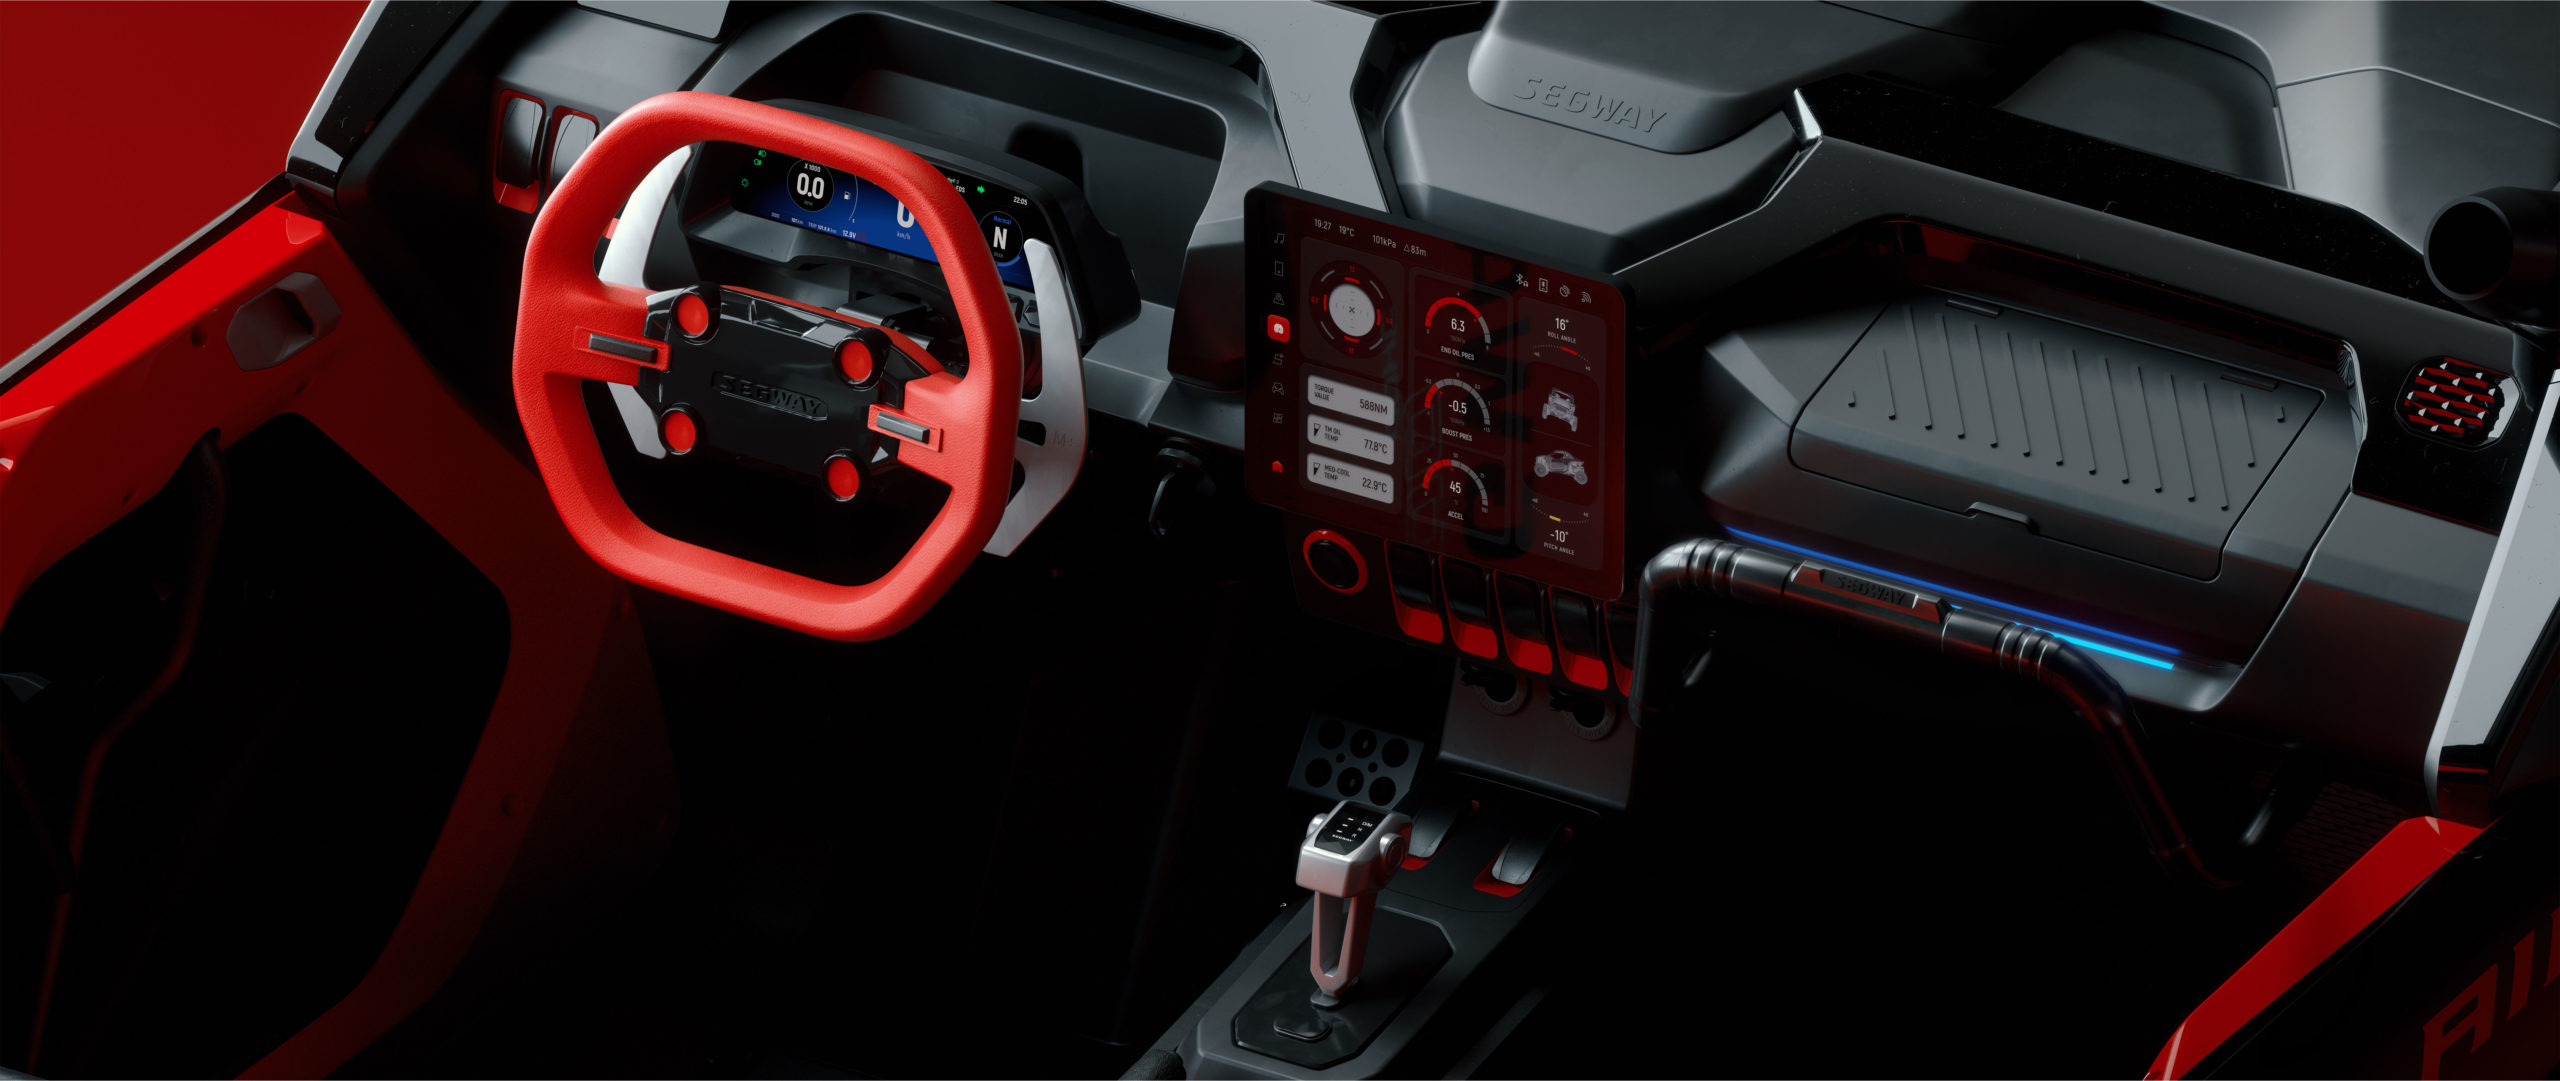 ІММЕРСІЙНА АТМОСФЕРА В САЛОНІВисокотехнологічний досвід із абсолютно новим кермом, пелюстковими перемикачами та зовнішнім освітленням.|IMMERSIVE CABIN AMBIENCEHigh-tech experience with a brand-new steering wheel, paddle shifters, and ambience lights.